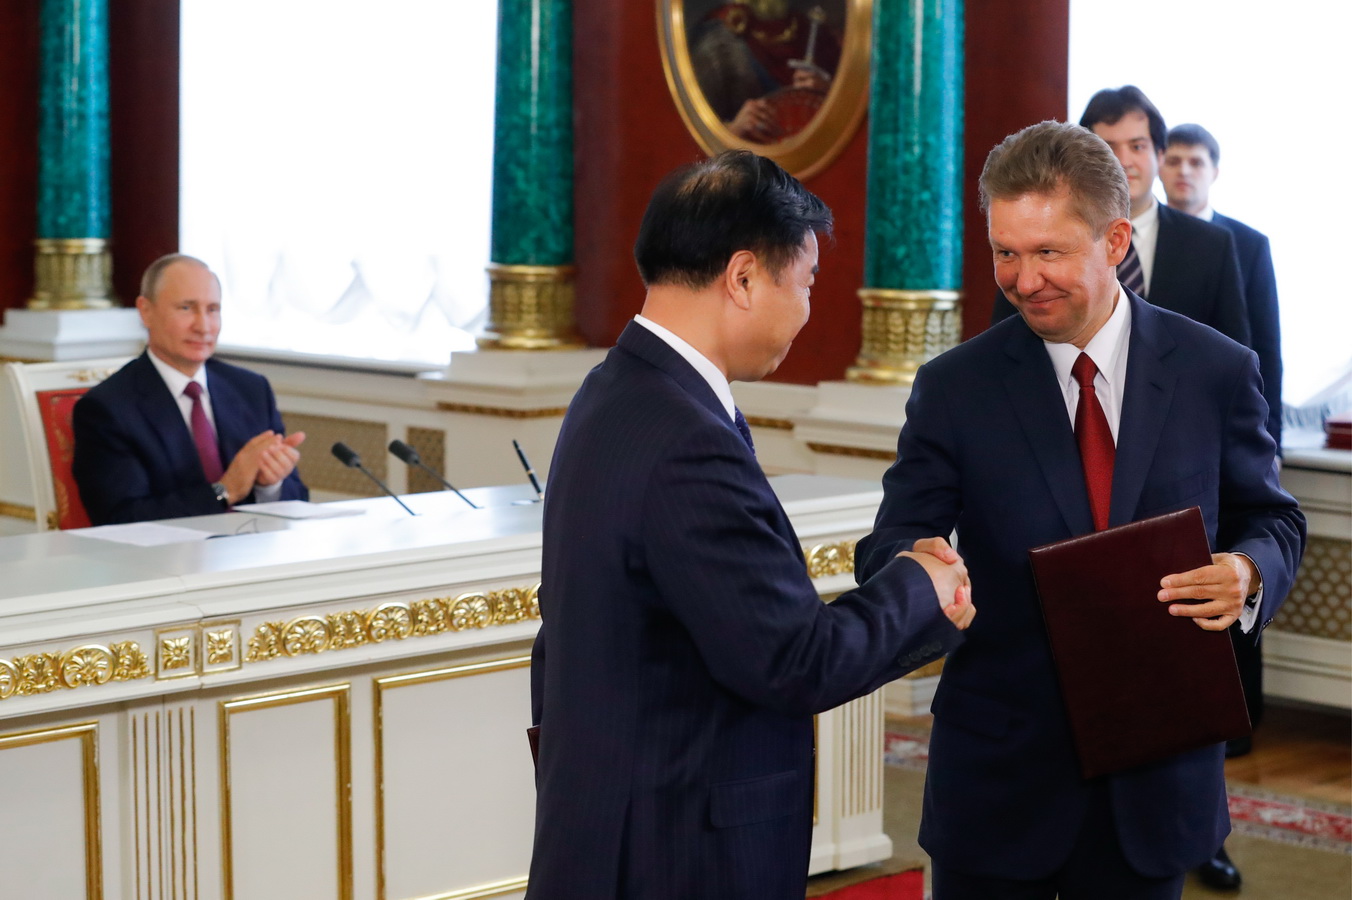 Prezesi Gazpromu i CNPC podpisują dodatkową umowę w sprawie Siły Syberii. Fot. TASS